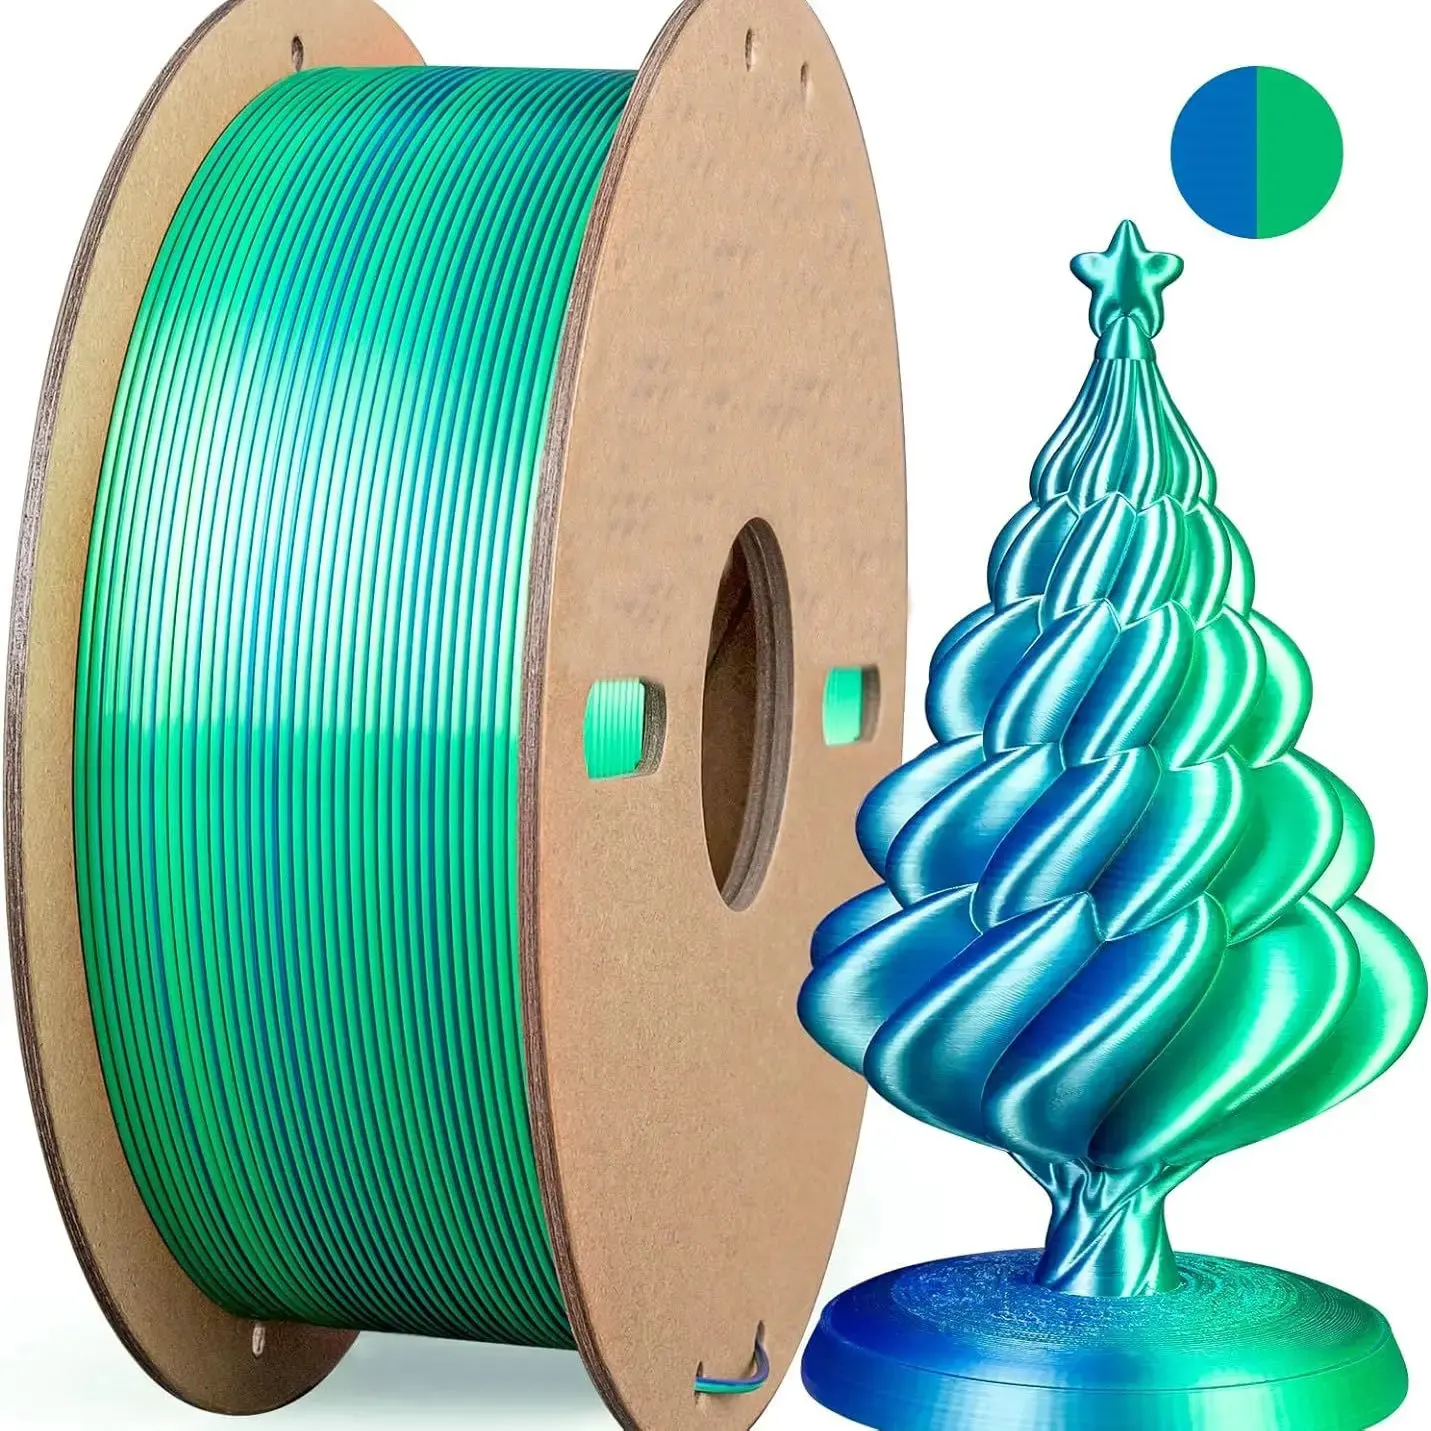 Filamento de impressão 3D multicolorido, filamento de impressão brilhante de seda PLA de 1,75 mm, dupla/tricolor, adequado para a maioria das impressoras 3D FDM